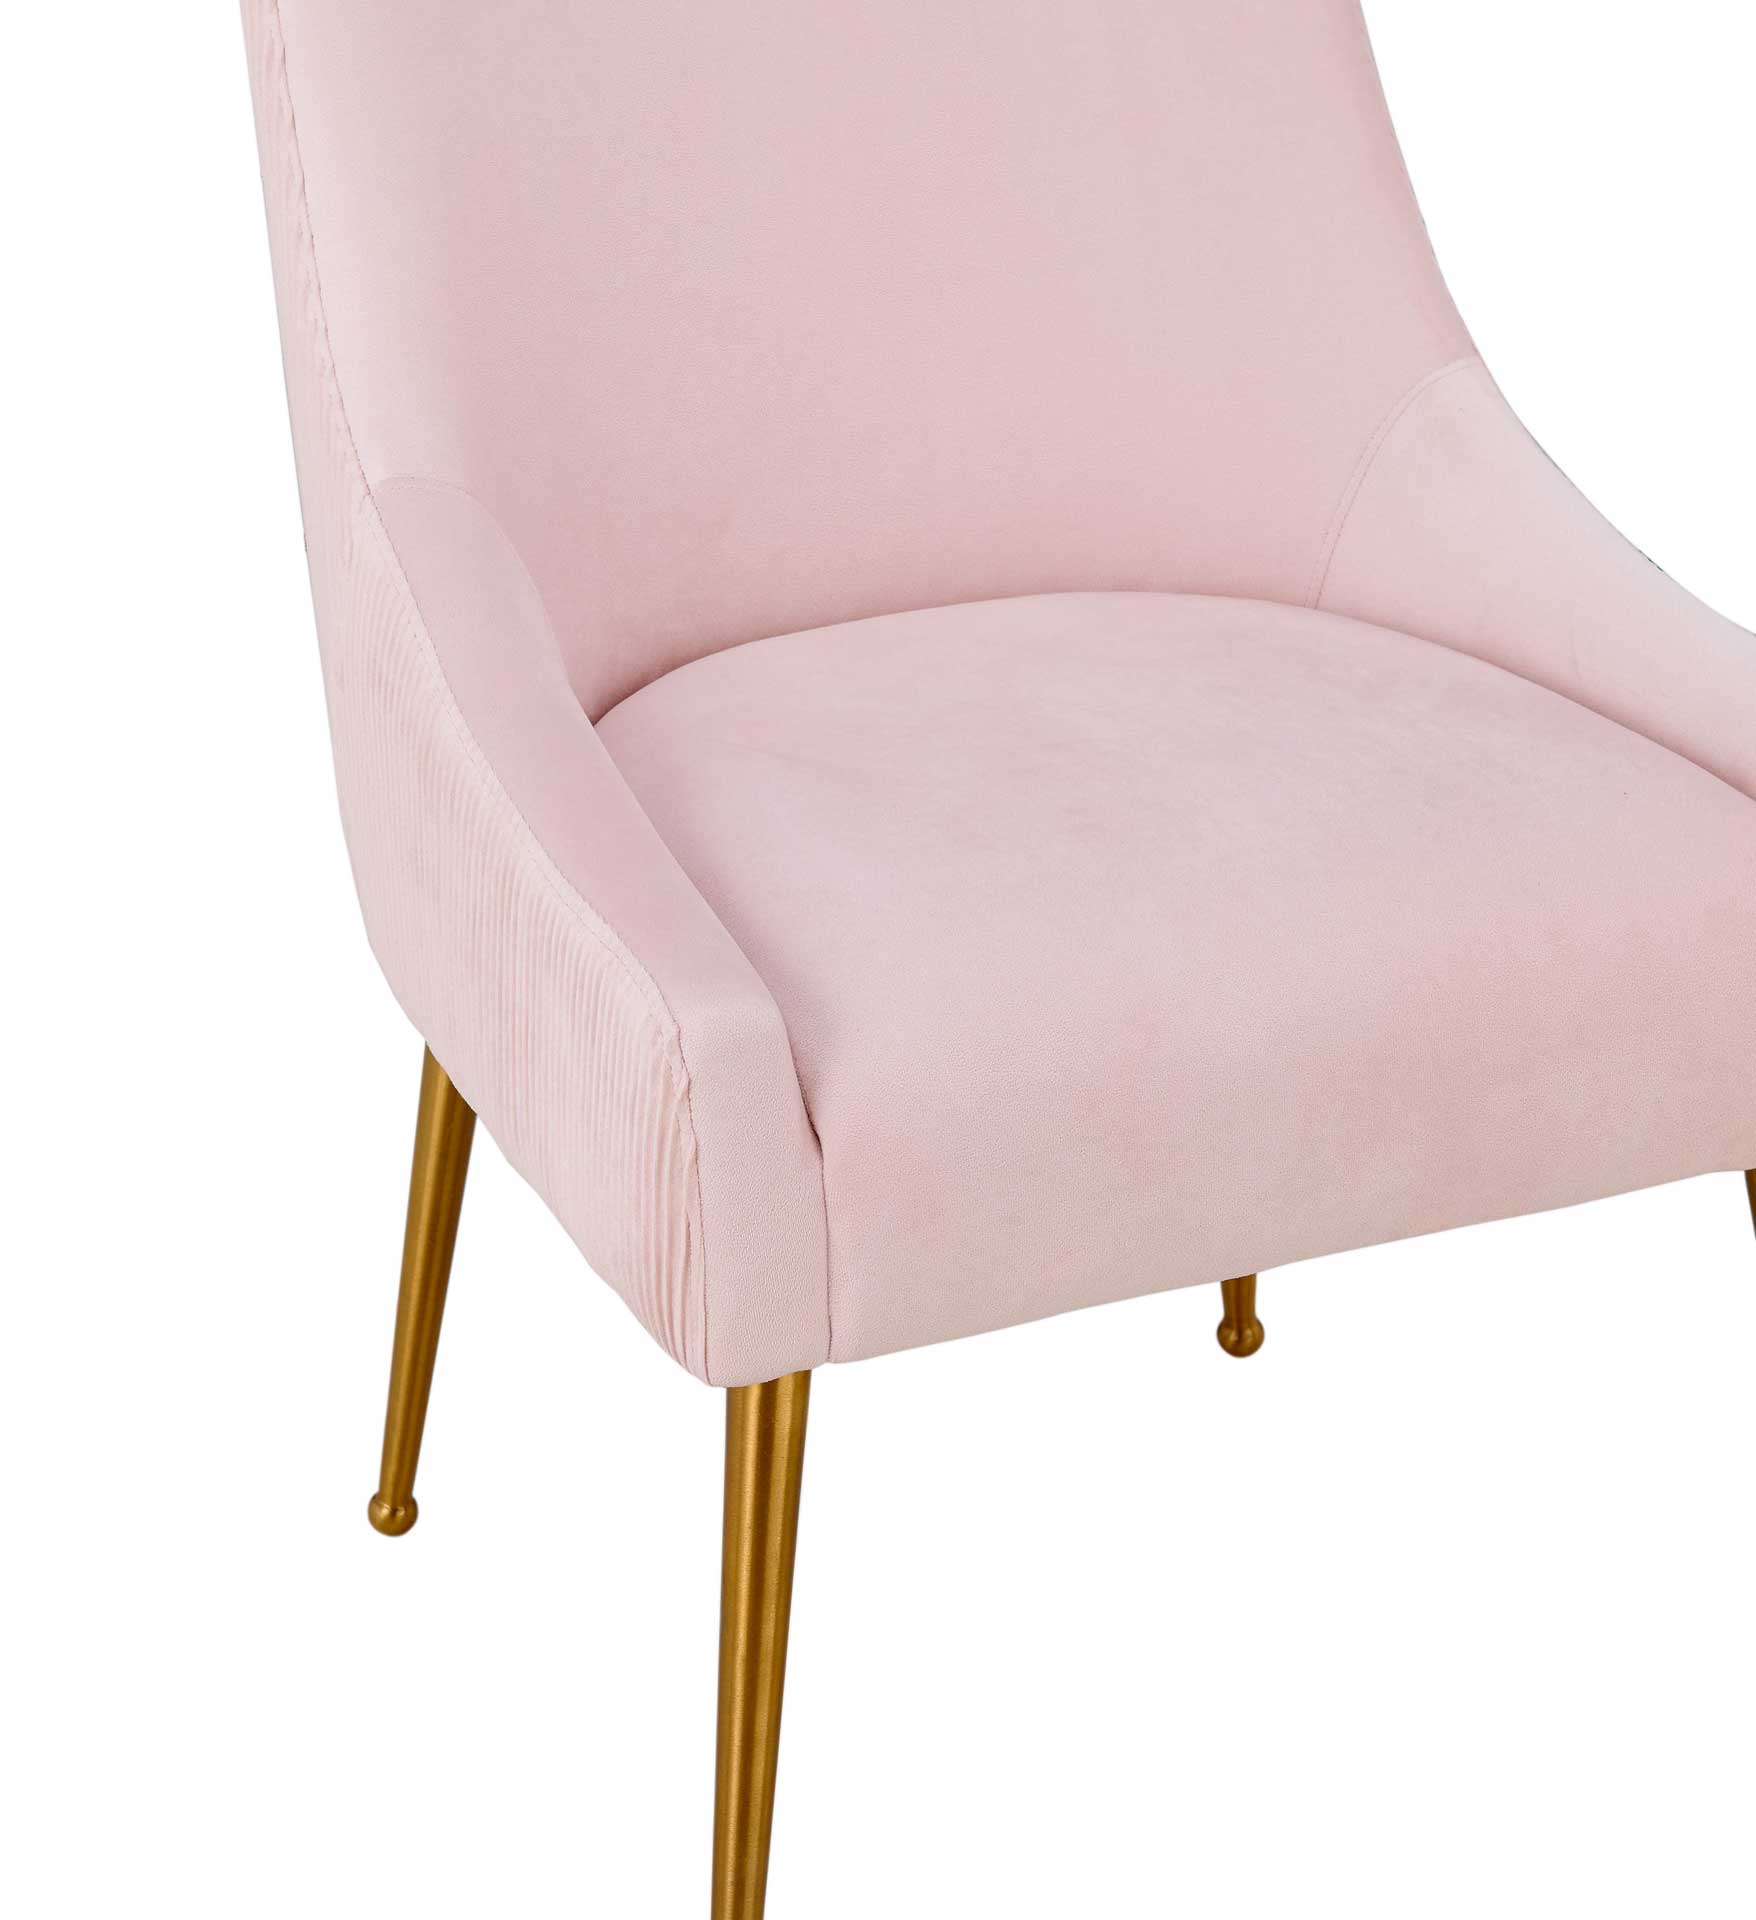 Bordeaux Pleated Velvet Side Chair Blush